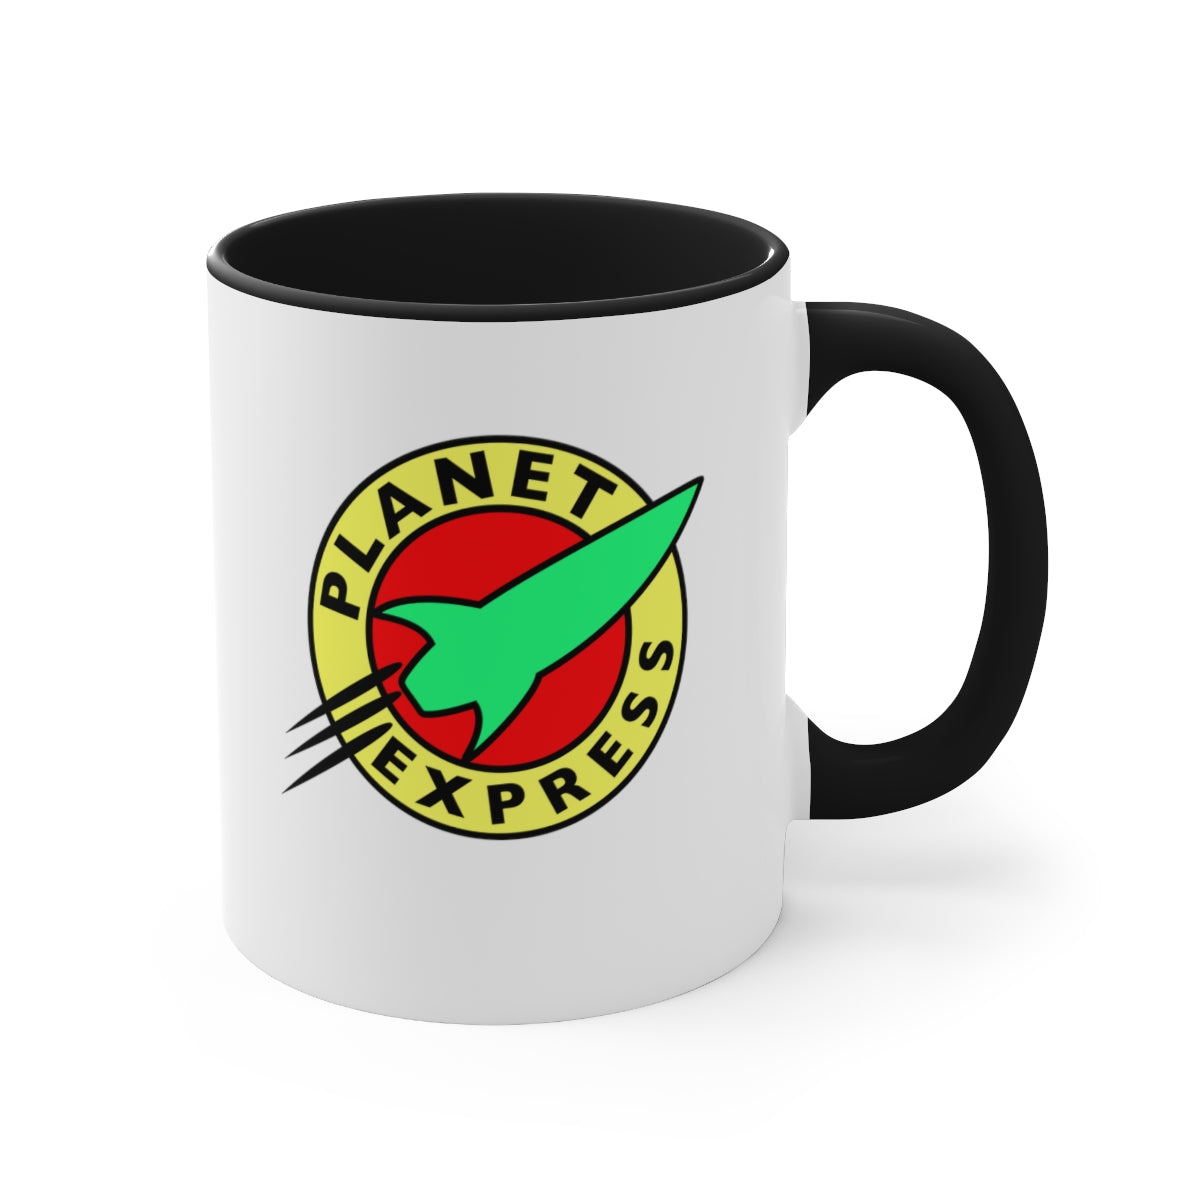 Planet Express Coffee Mug, 11oz